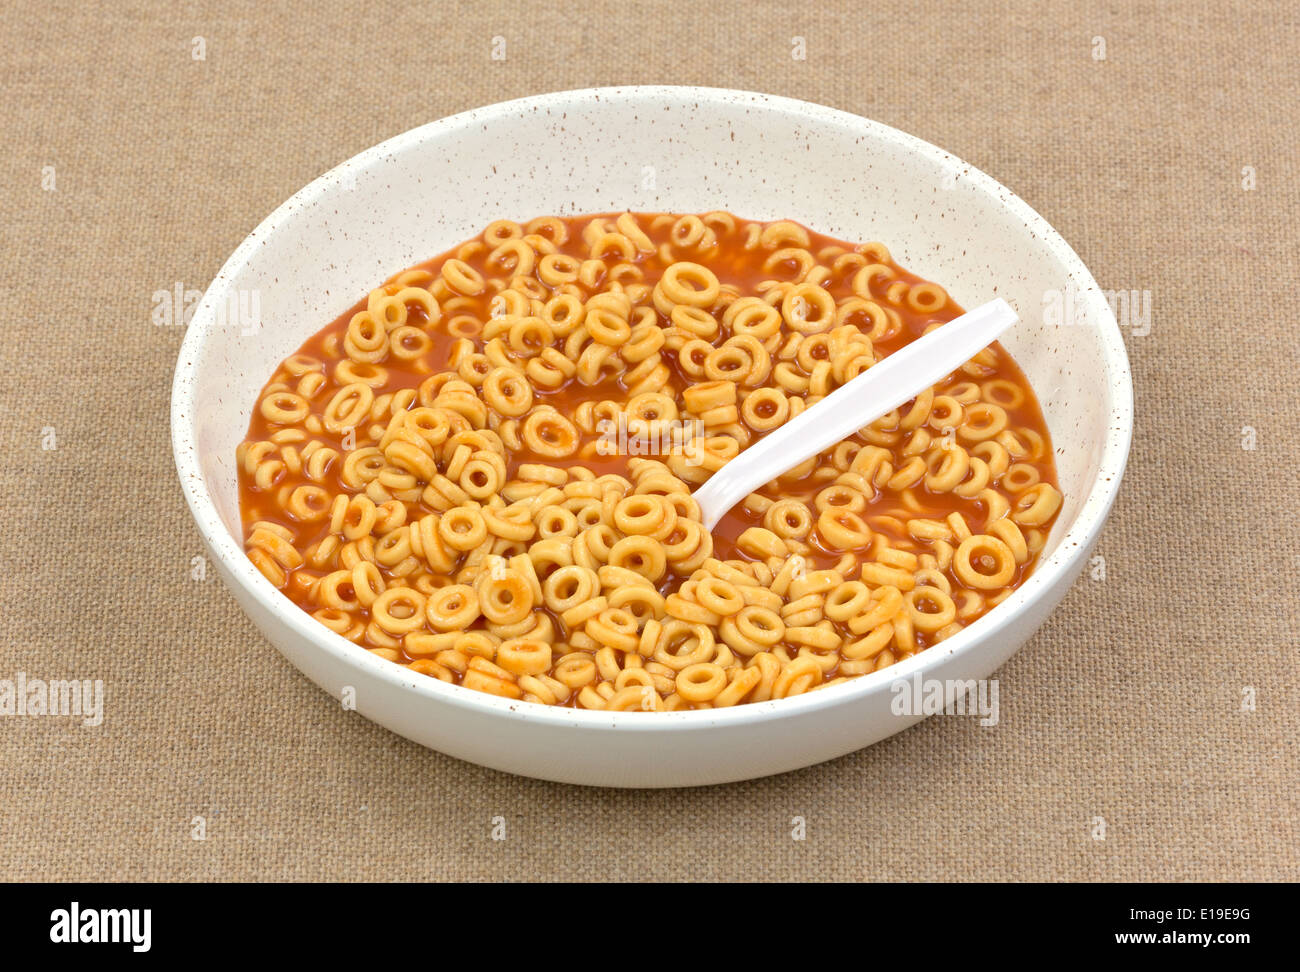 Una porción de conservas de ronda en el cuenco de espaguetis con salsa de tomate y una cuchara de plástico blanca sobre un fondo de tela marrón. Foto de stock